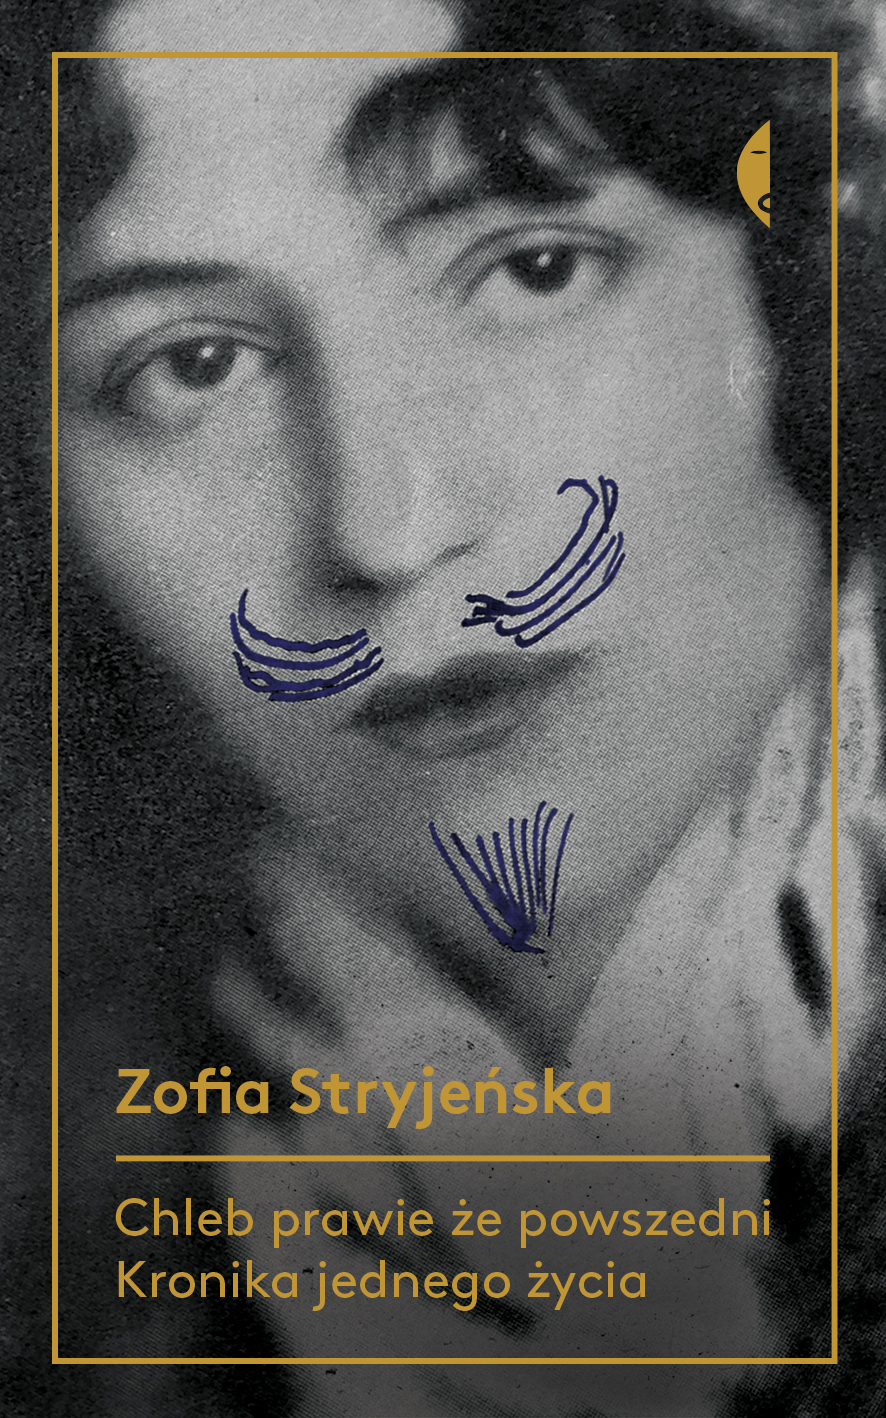 Zofia Stryjeńska, „Chleb prawie że powszedni. Historia jednego życia”, okładka (źródło: materiały prasowe wydawcy)